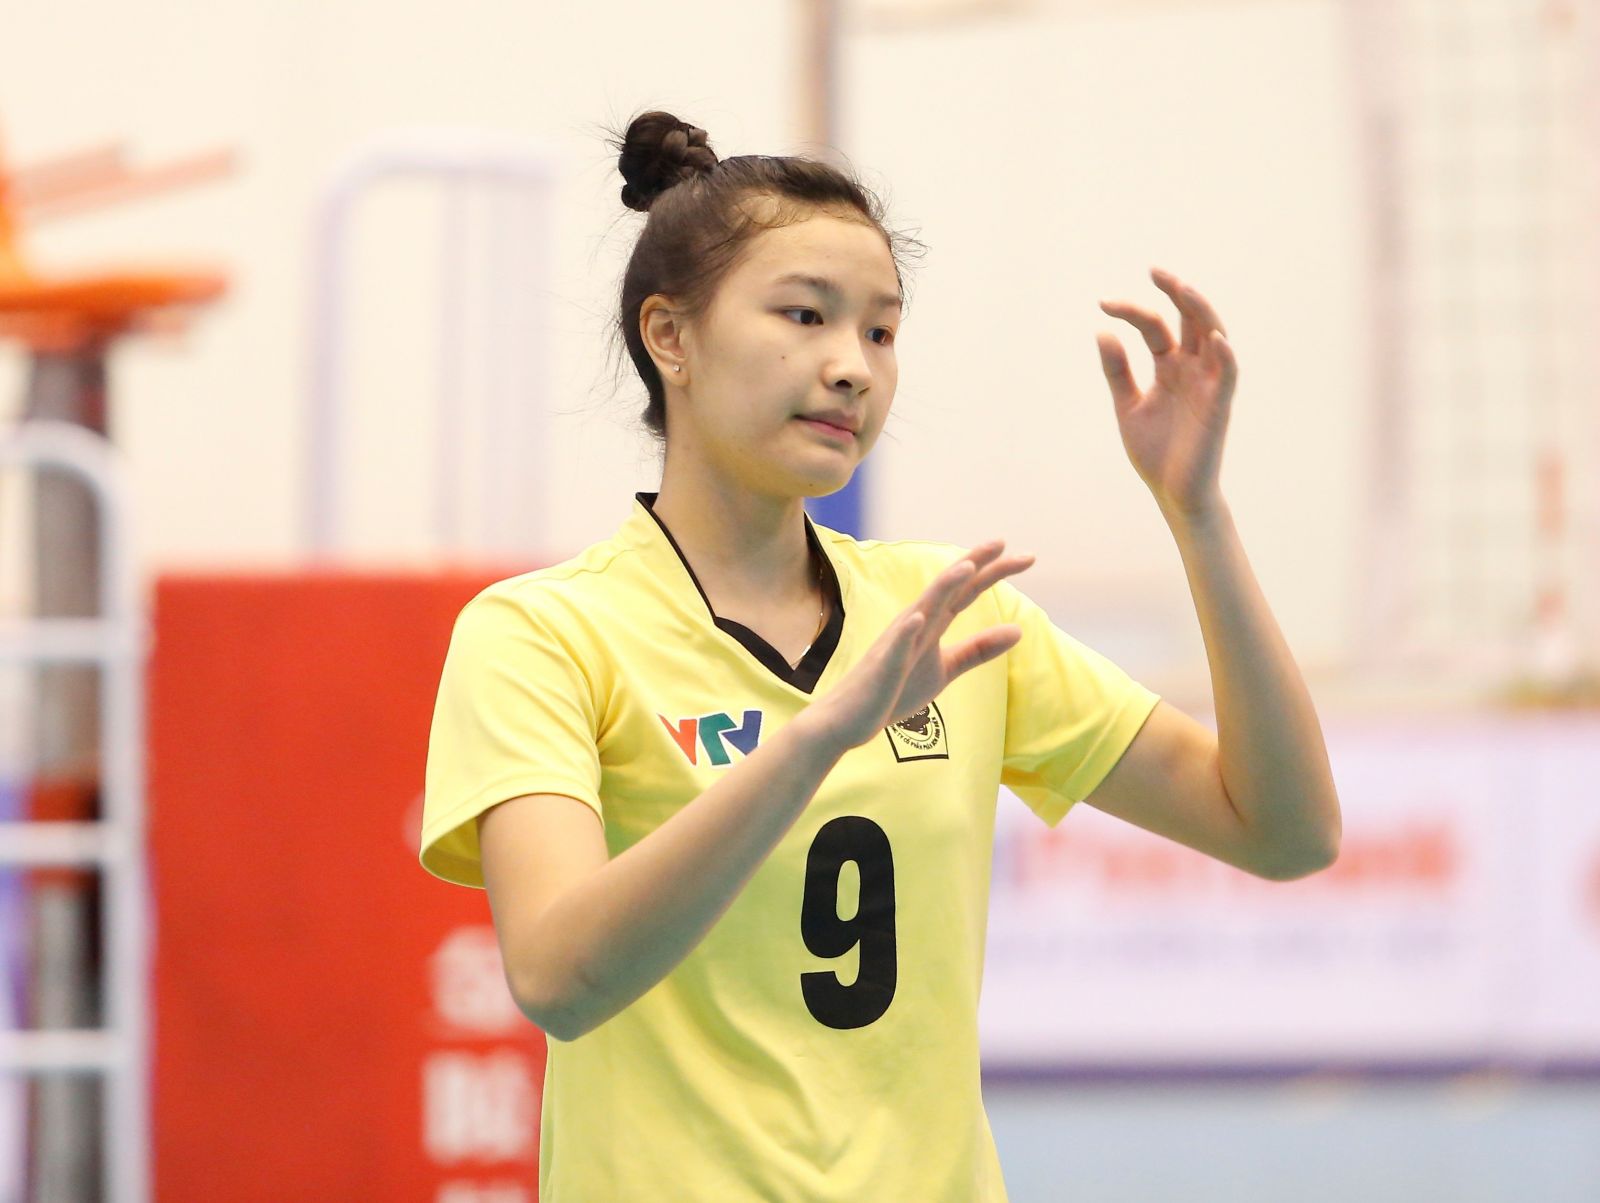 Đặng Thị Kim Thanh, Hoa khôi của giải bóng chuyền nữ quốc tế VTV9 Bình Điền 2019, 